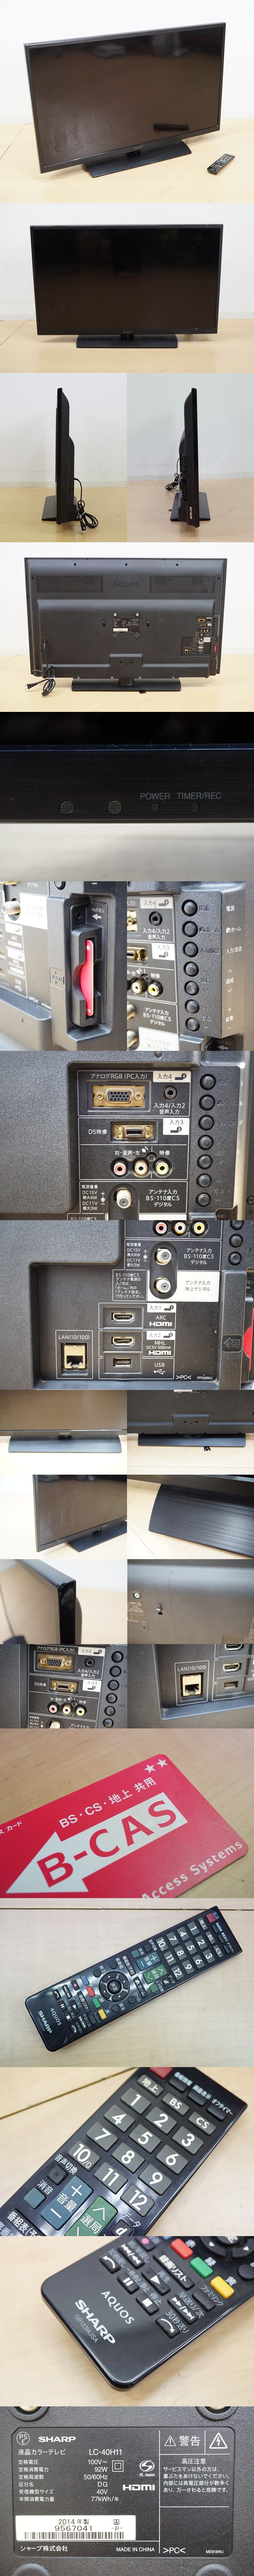 日本製得価 ヤフオク! 液晶テレビ 40V型 LC-40H11 4... - AQUOS 超特価